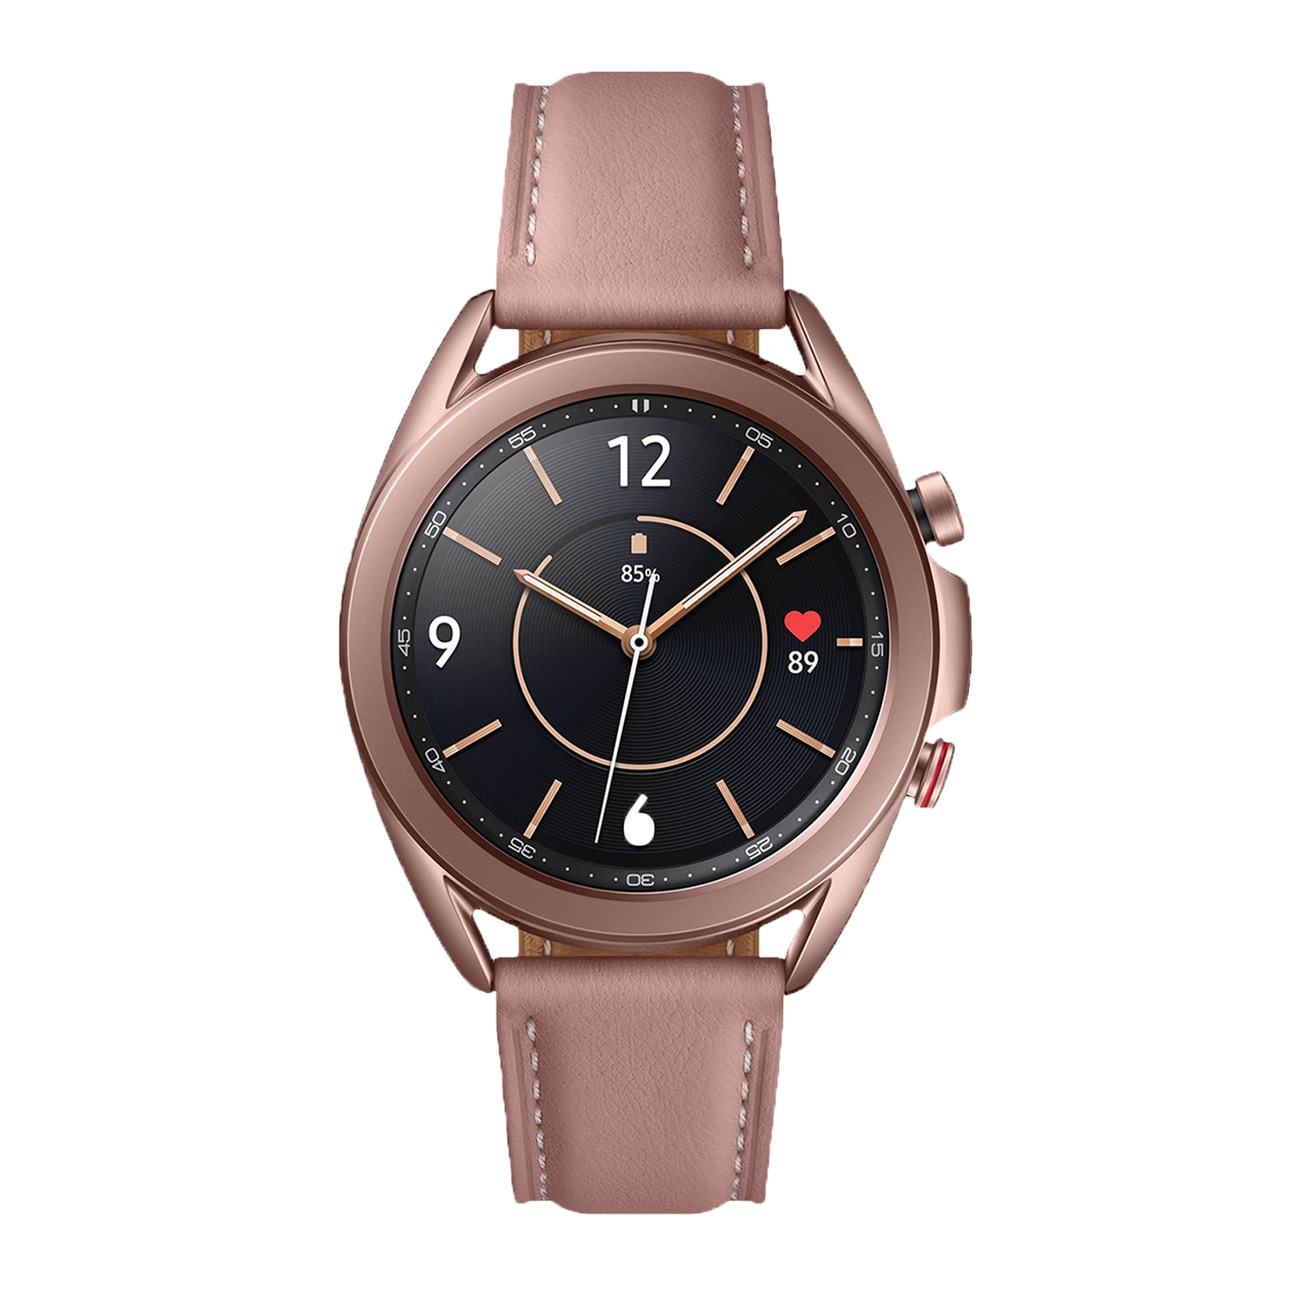 Samsung Galaxy Watch 3 Mystic Bronze | Armband mit Naht | 41mm | LTE 4.0 | Schlaftracking, Herzfrequenztracker & Blutdruckmessung | 56 Std. Akku 